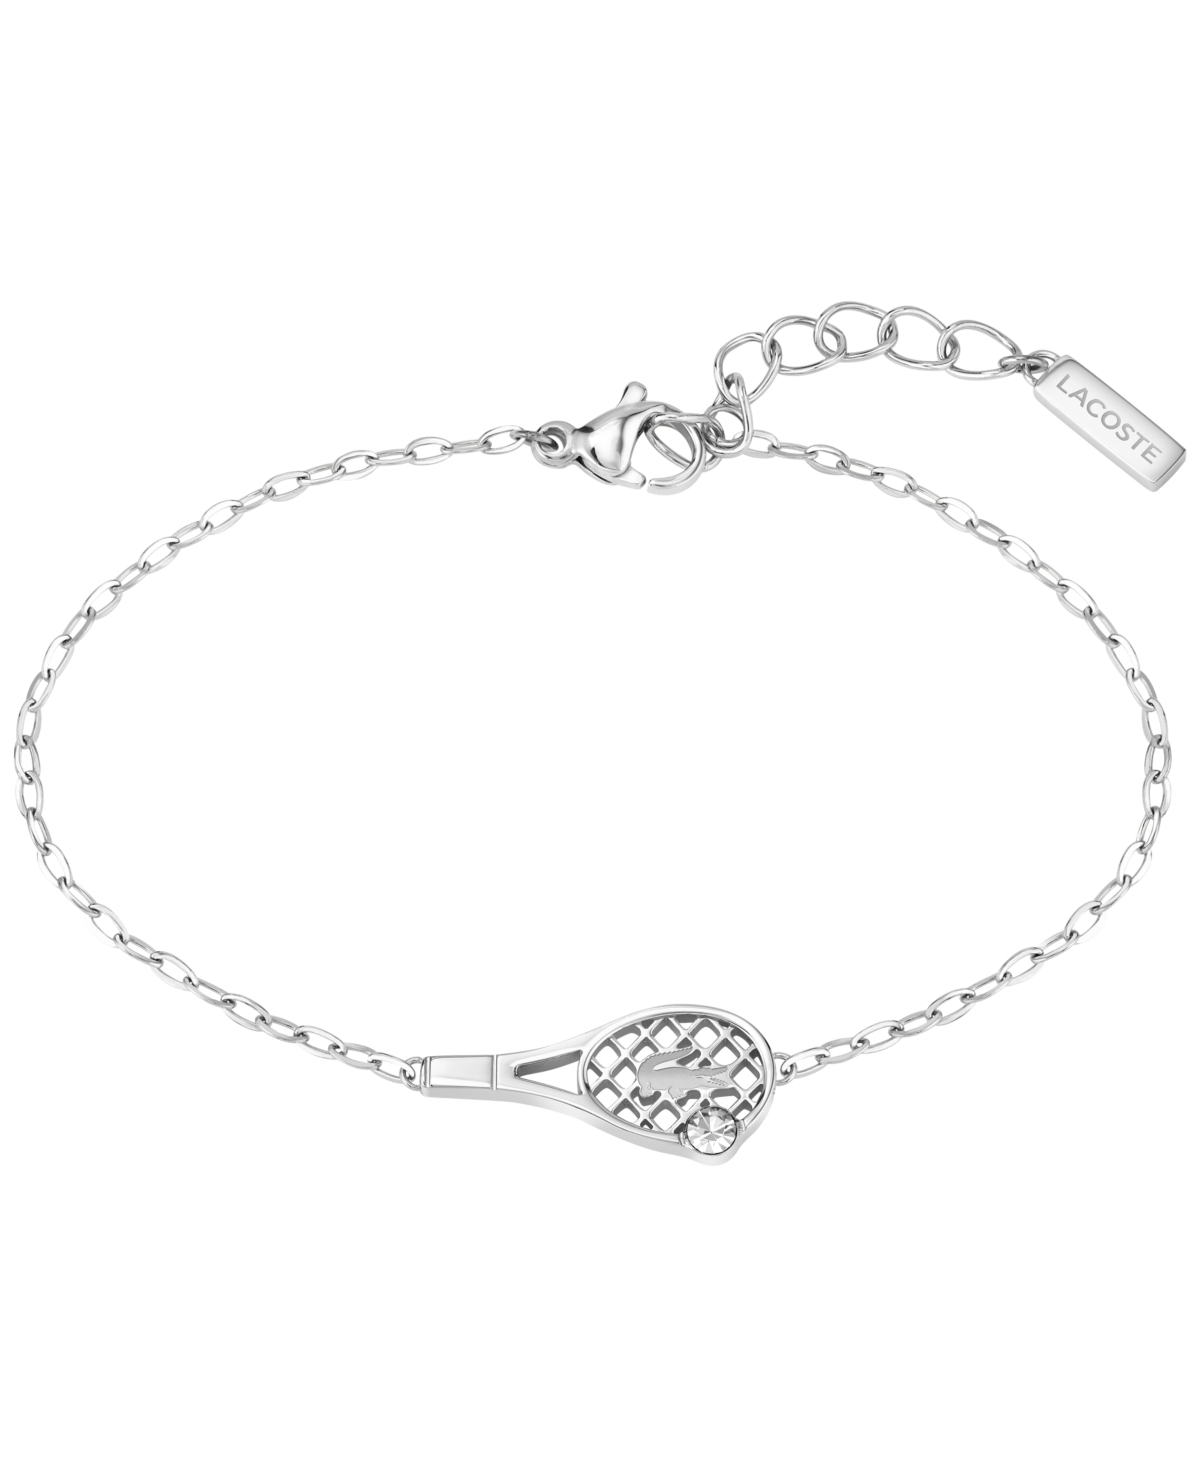 Lacoste Stainless Steel Tennis Racket Bracelet In Silver